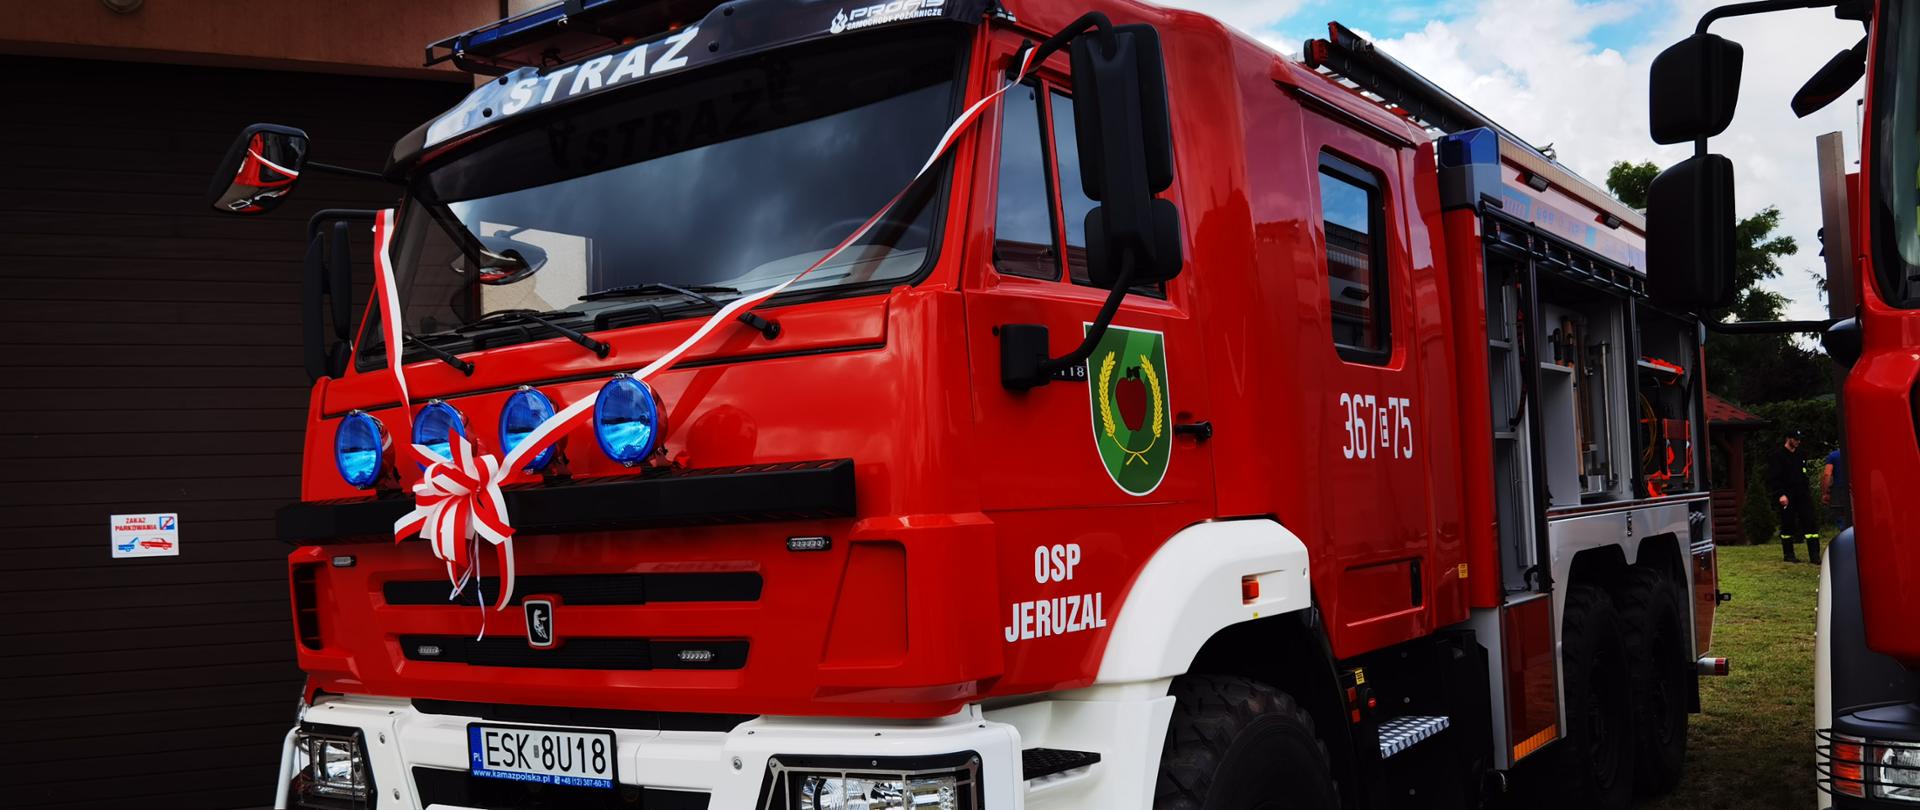 ciężarówka - samochód gaśniczy z biało czerwoną wstęga na masce, z boku auta napis osp jeruzal